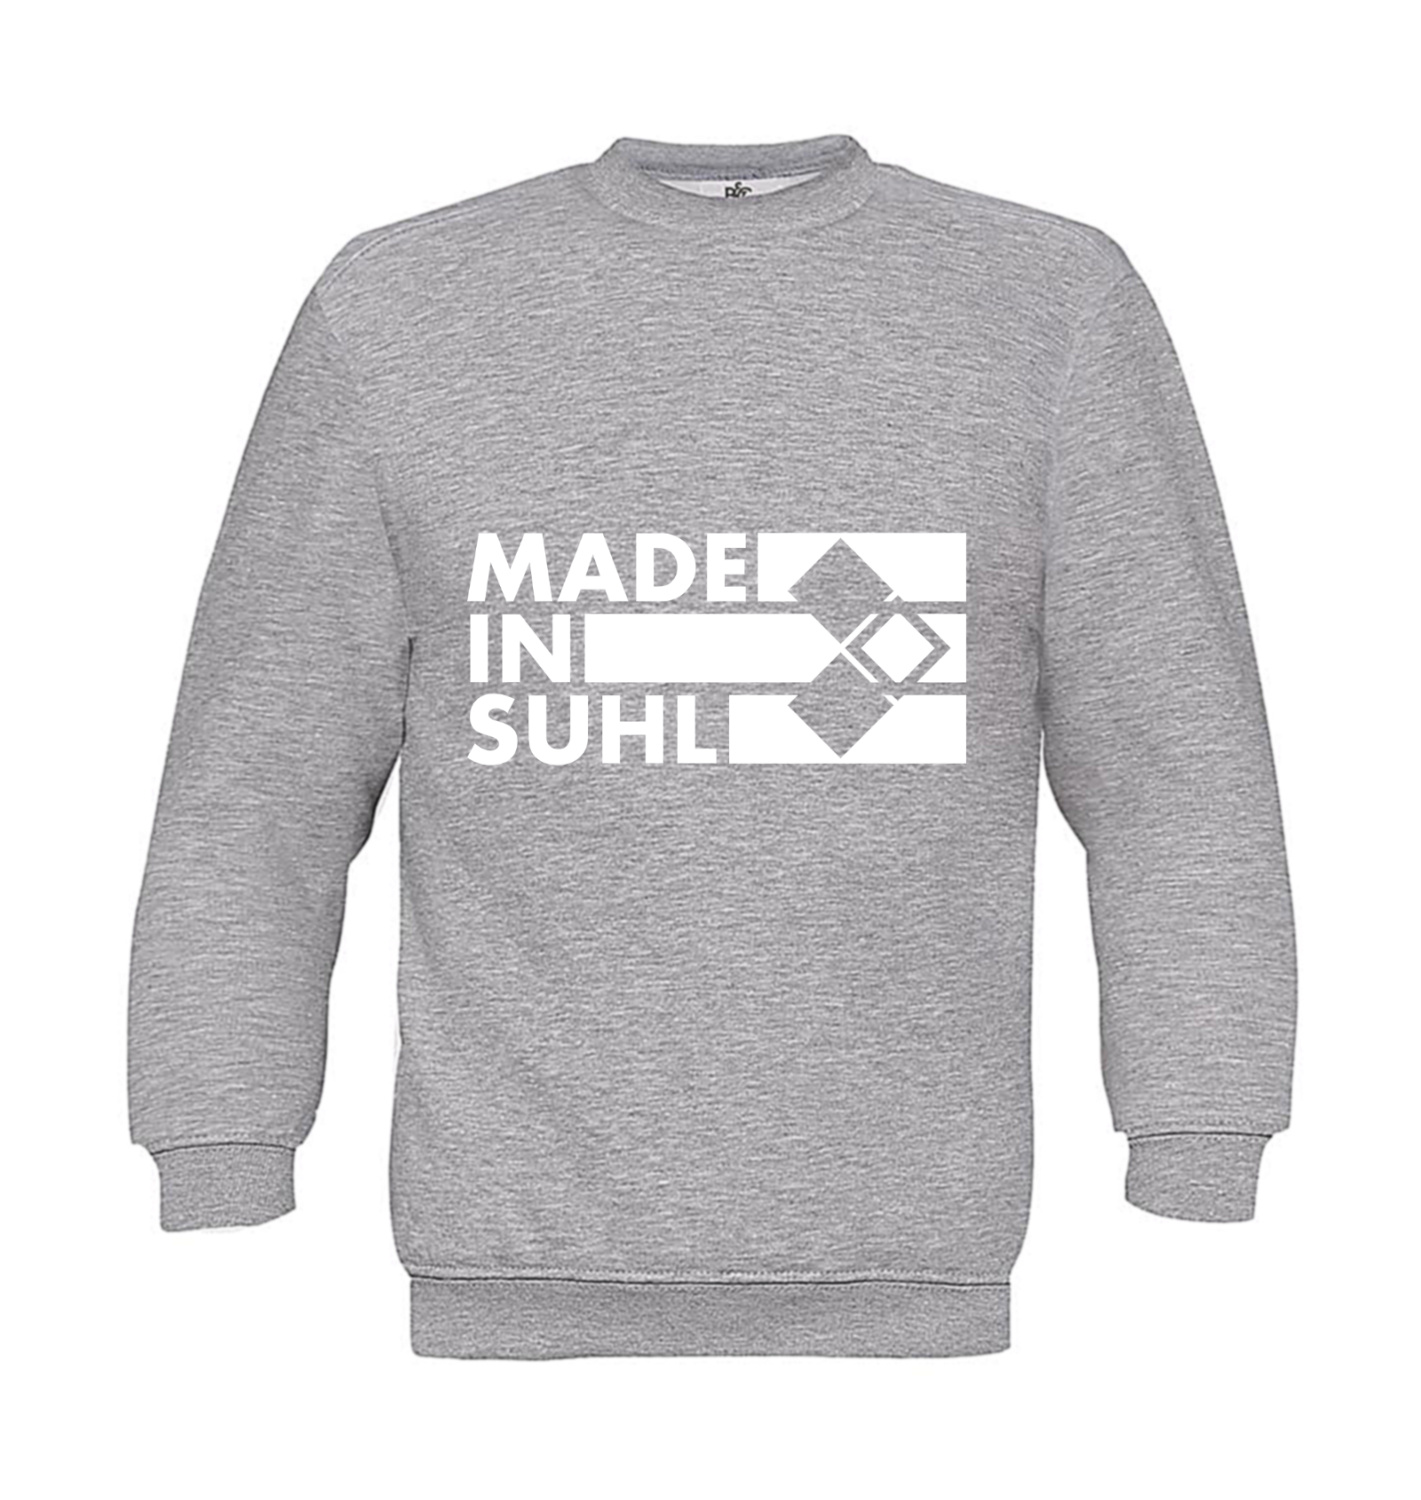 Sweatshirt Kinder 2Takter - Made in Suhl